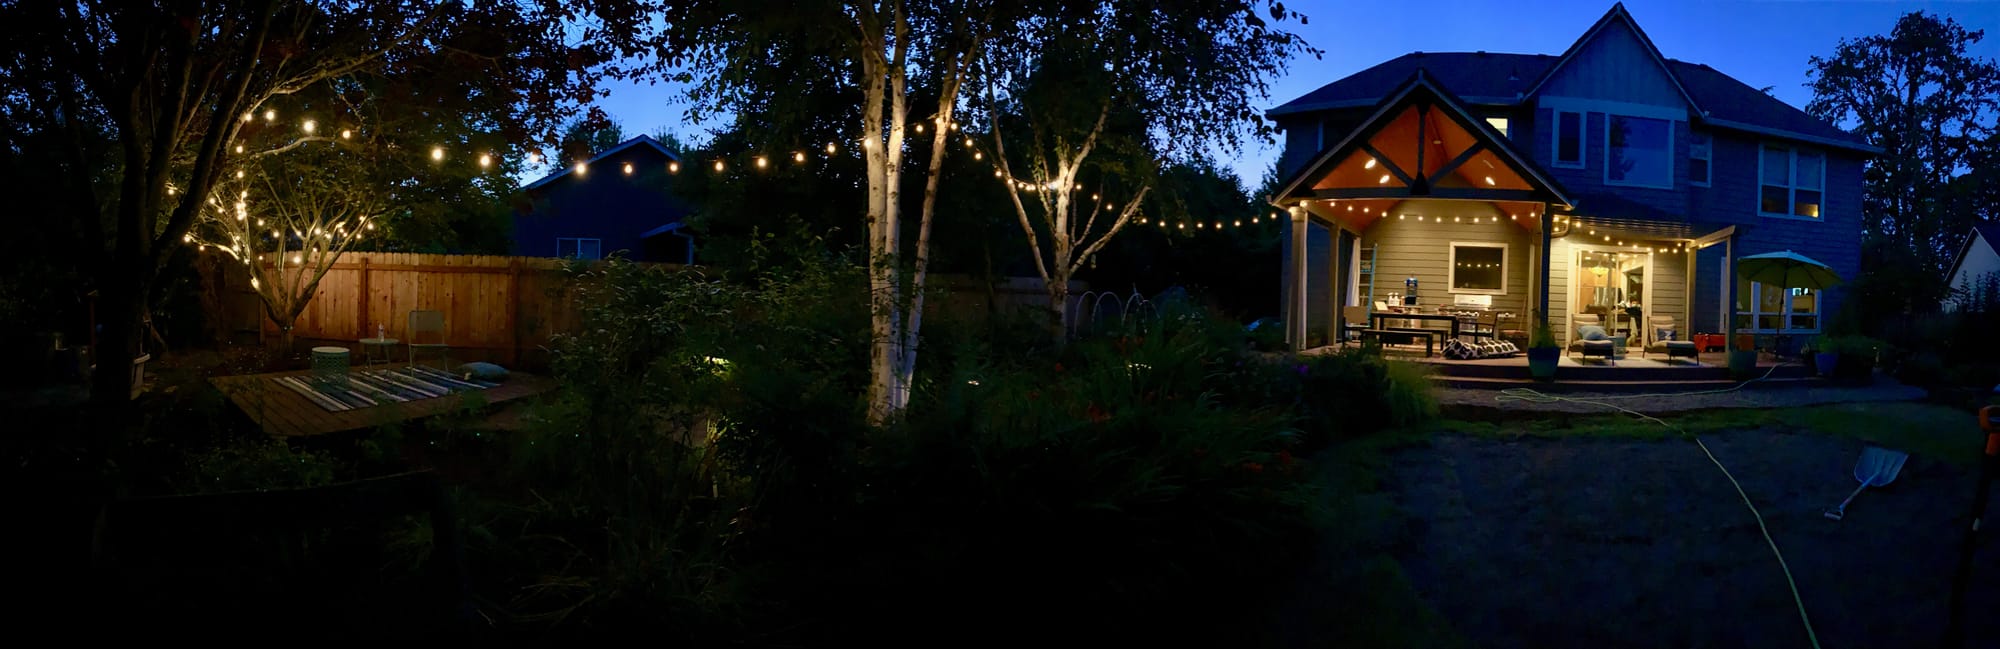 lights strung through my backyard